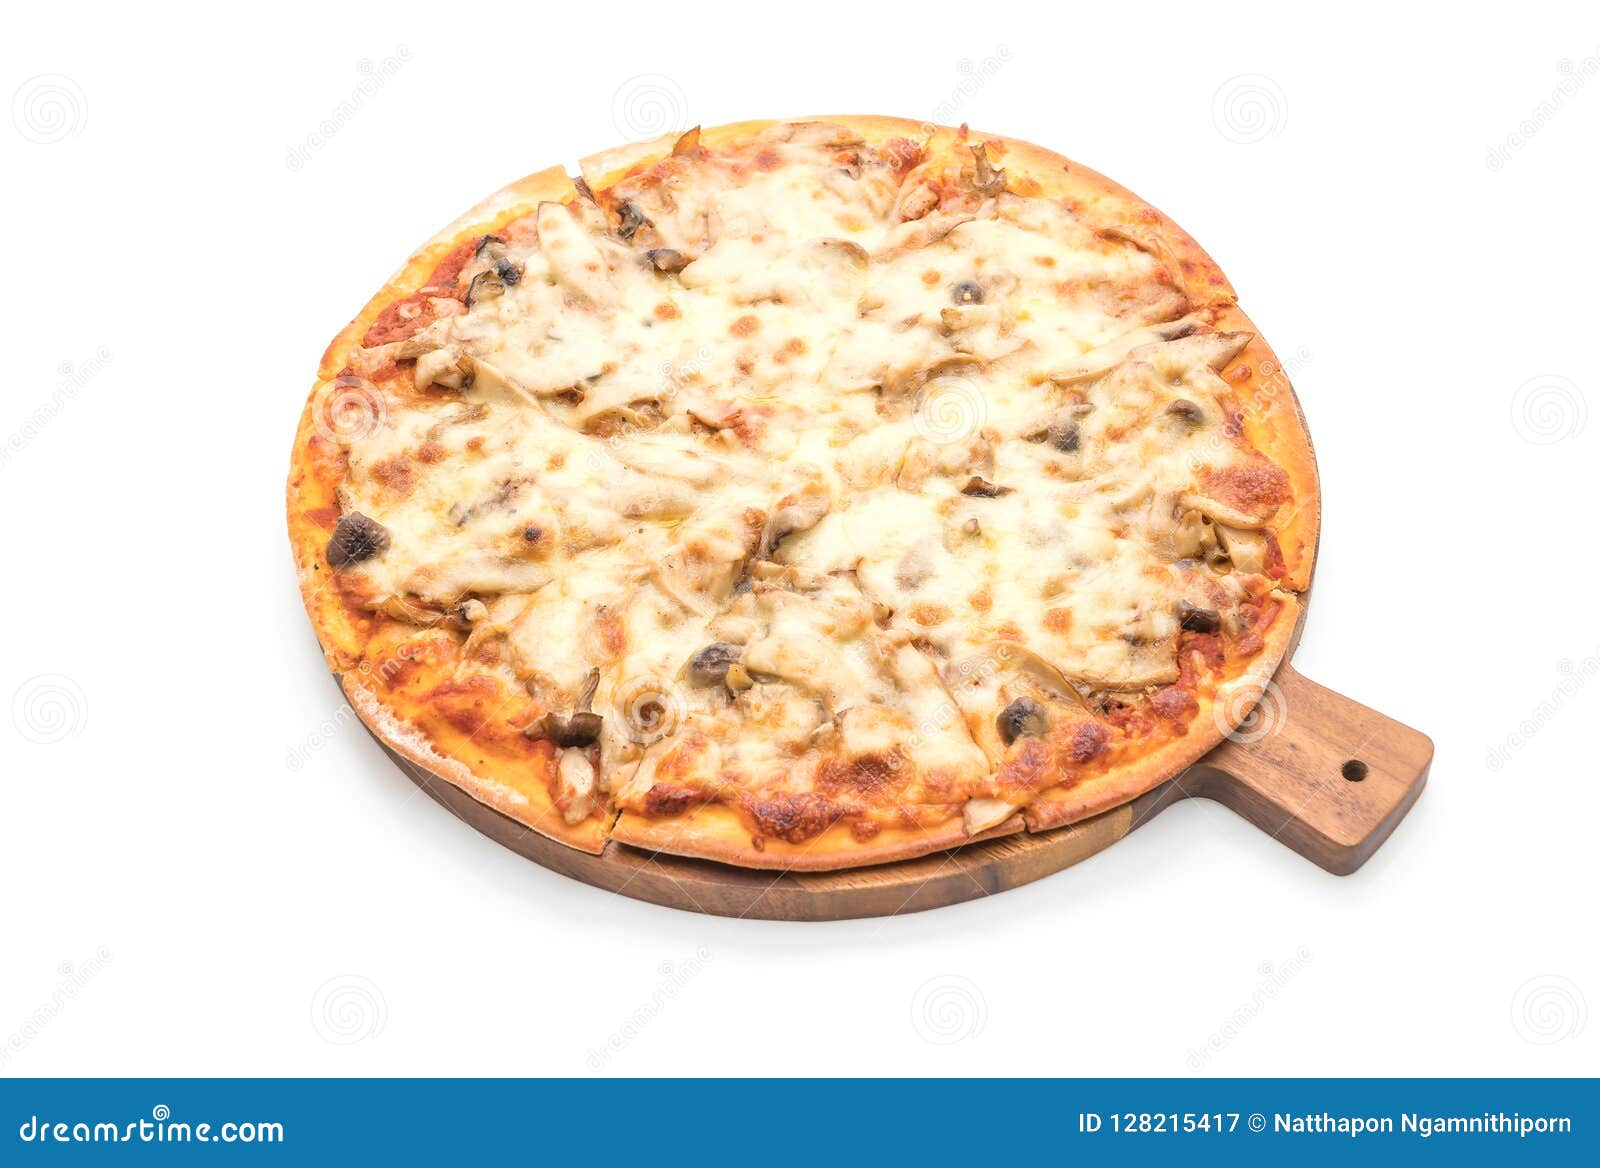 пицца грибная с белым соусом рецепт фото 11